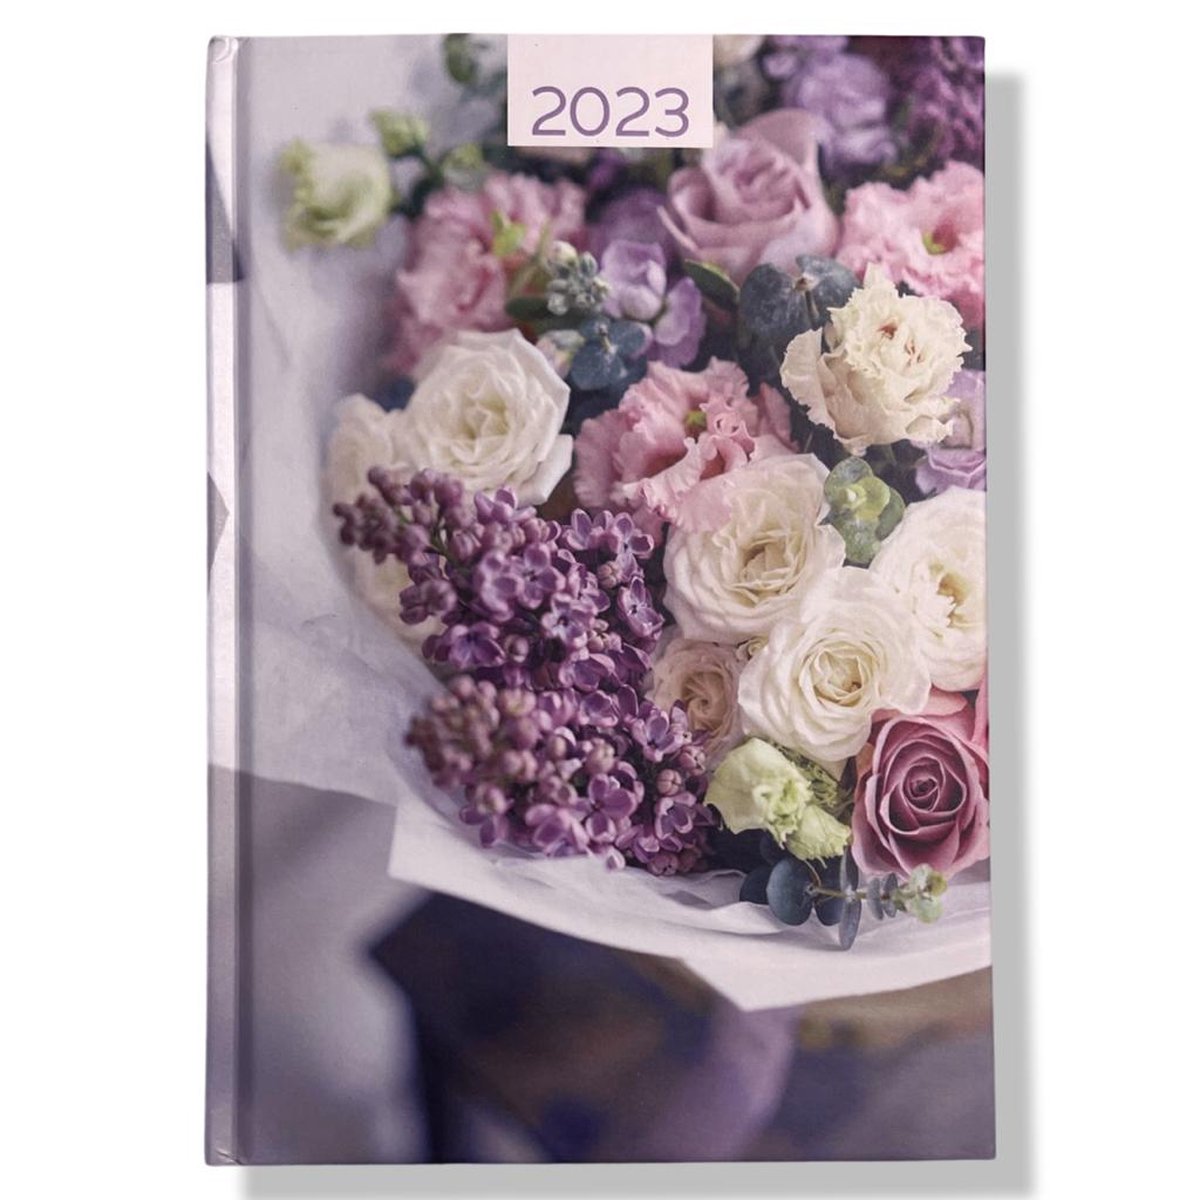 Hardcover Agenda 2023 - Boeket Bloemen - A5 15x21cm - 1w/2p